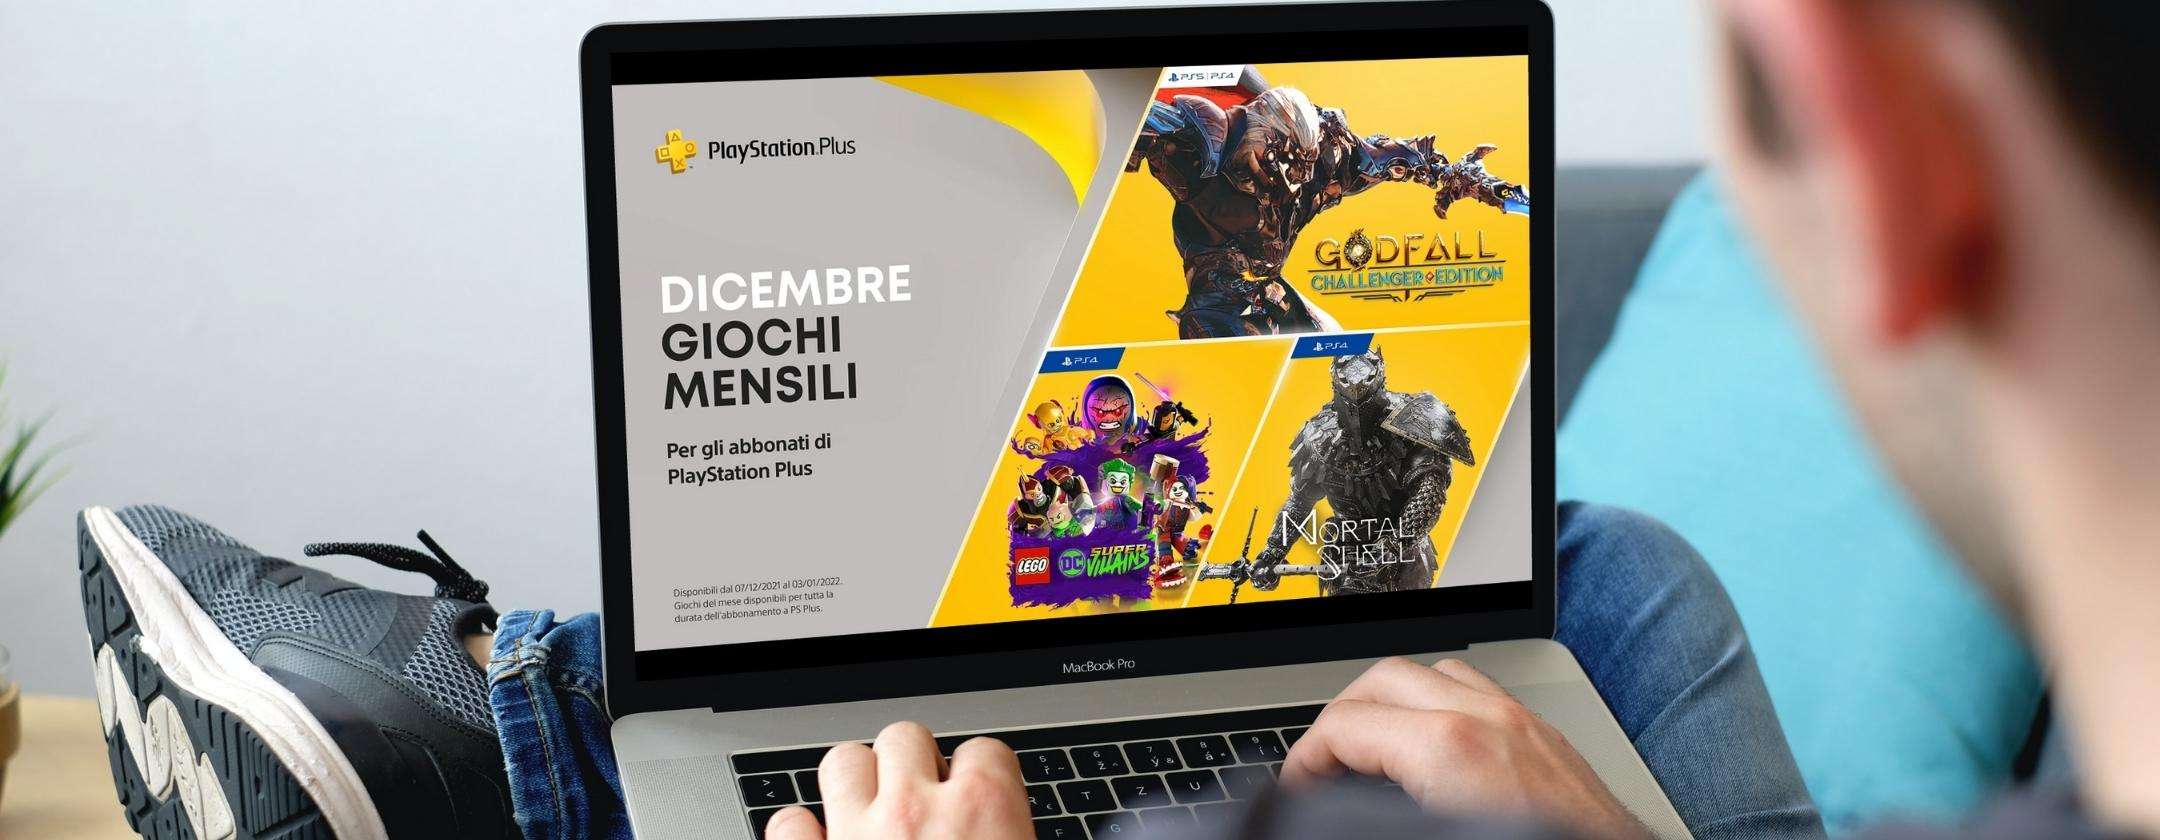 PlayStation Plus: confermati i 3 giochi gratis di dicembre